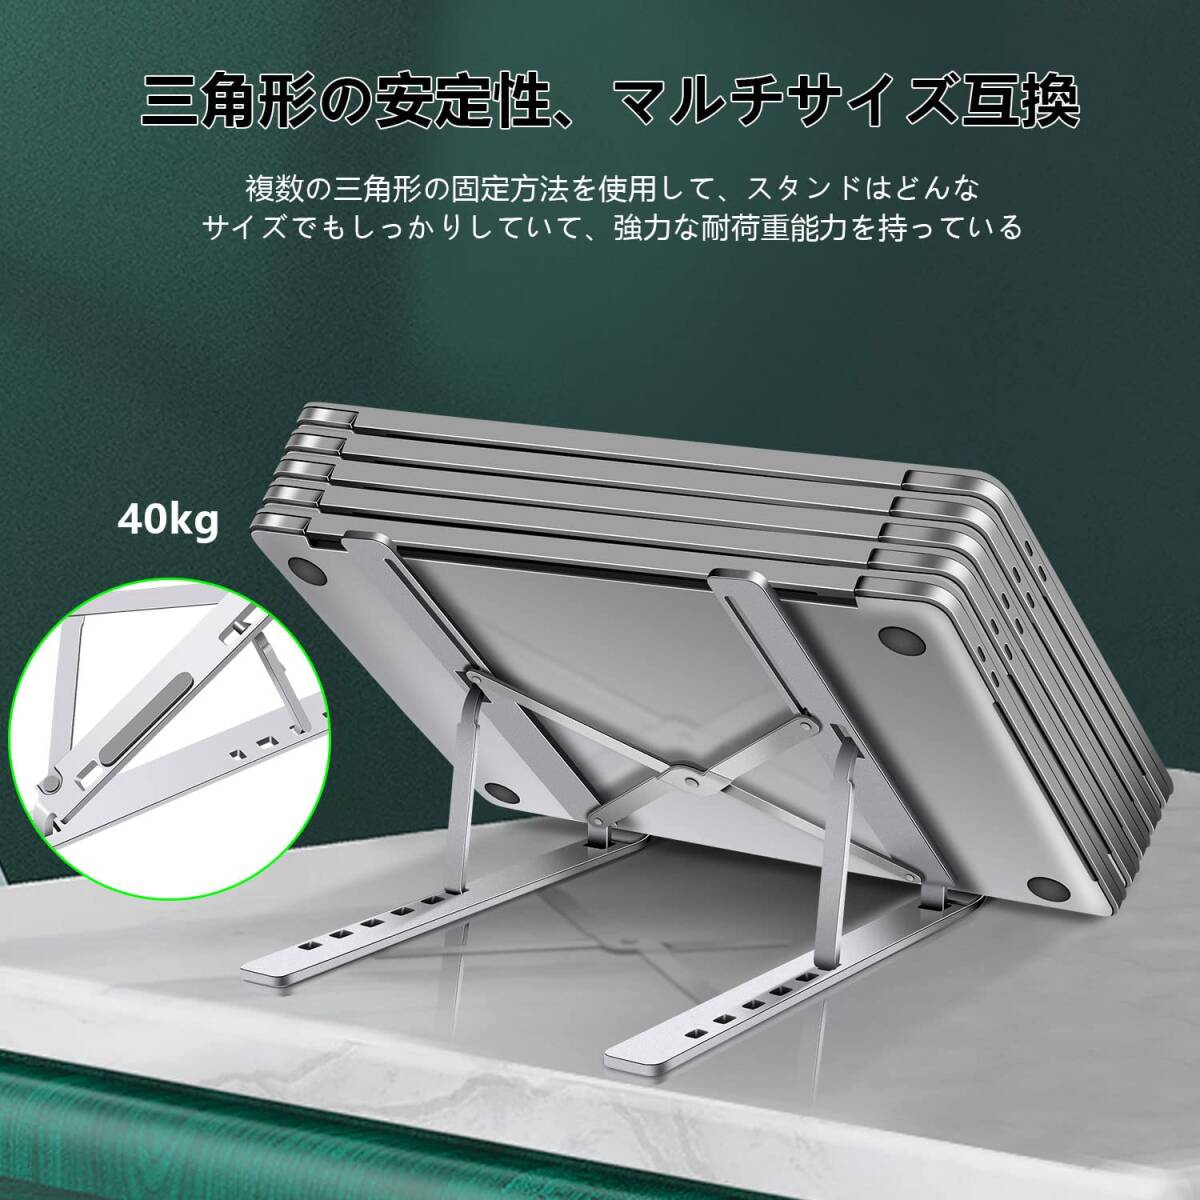 【今売れています】PC タブレット ノートパソコン iPadスタンド 折り畳み 人間工学 高さ 角度6段階調整 収納可能 持ち運び